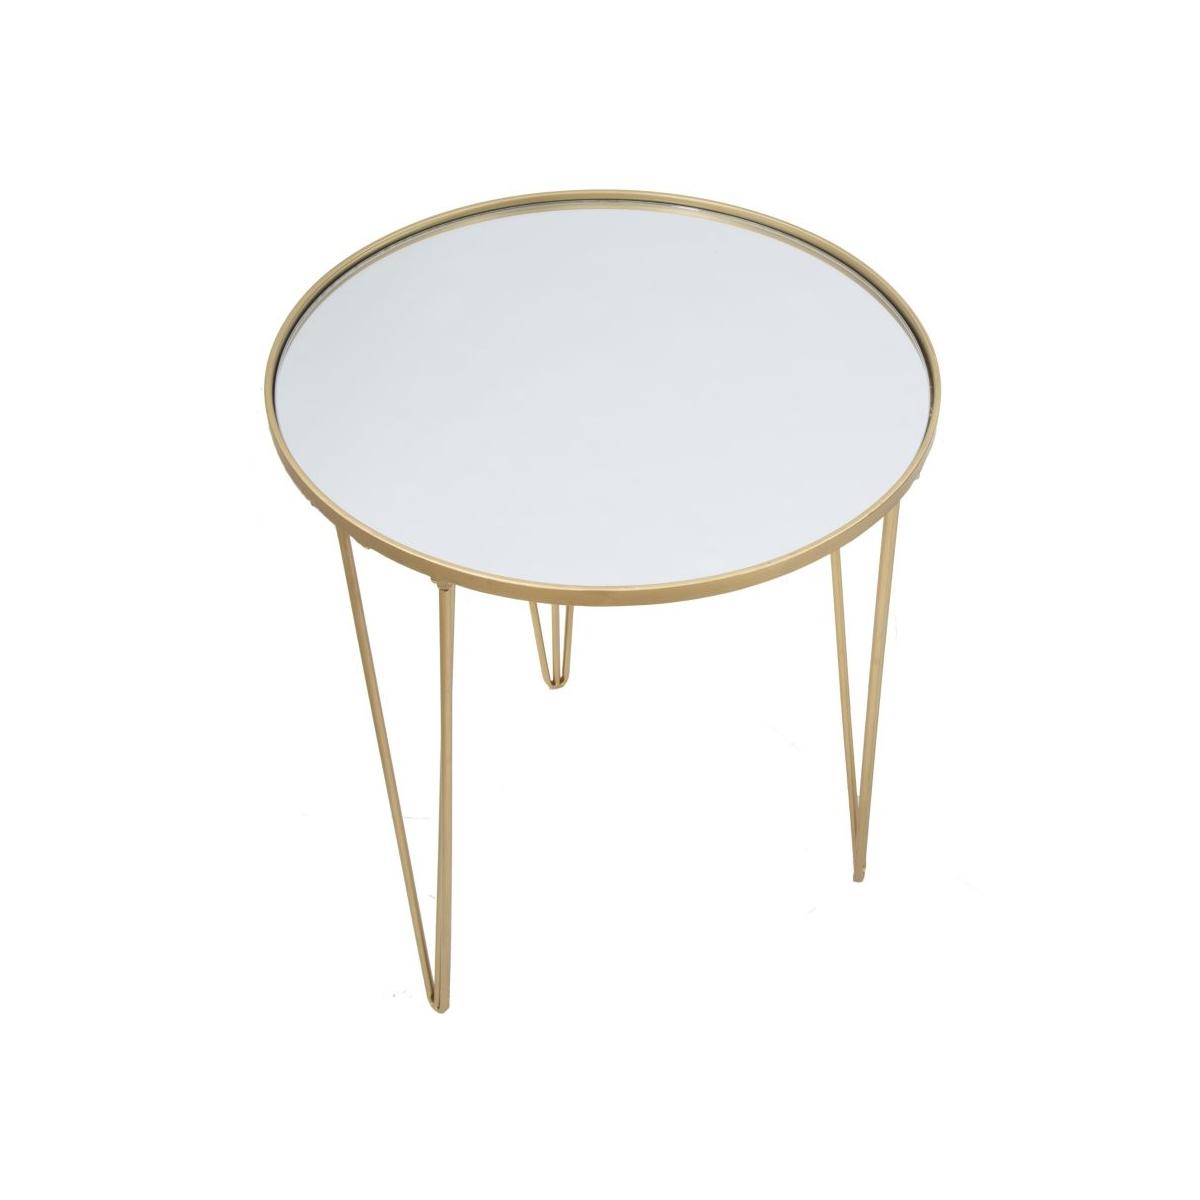 Tavolinetto Da Caffe' Glam Gold/Mirror cm.Ø50x58,5